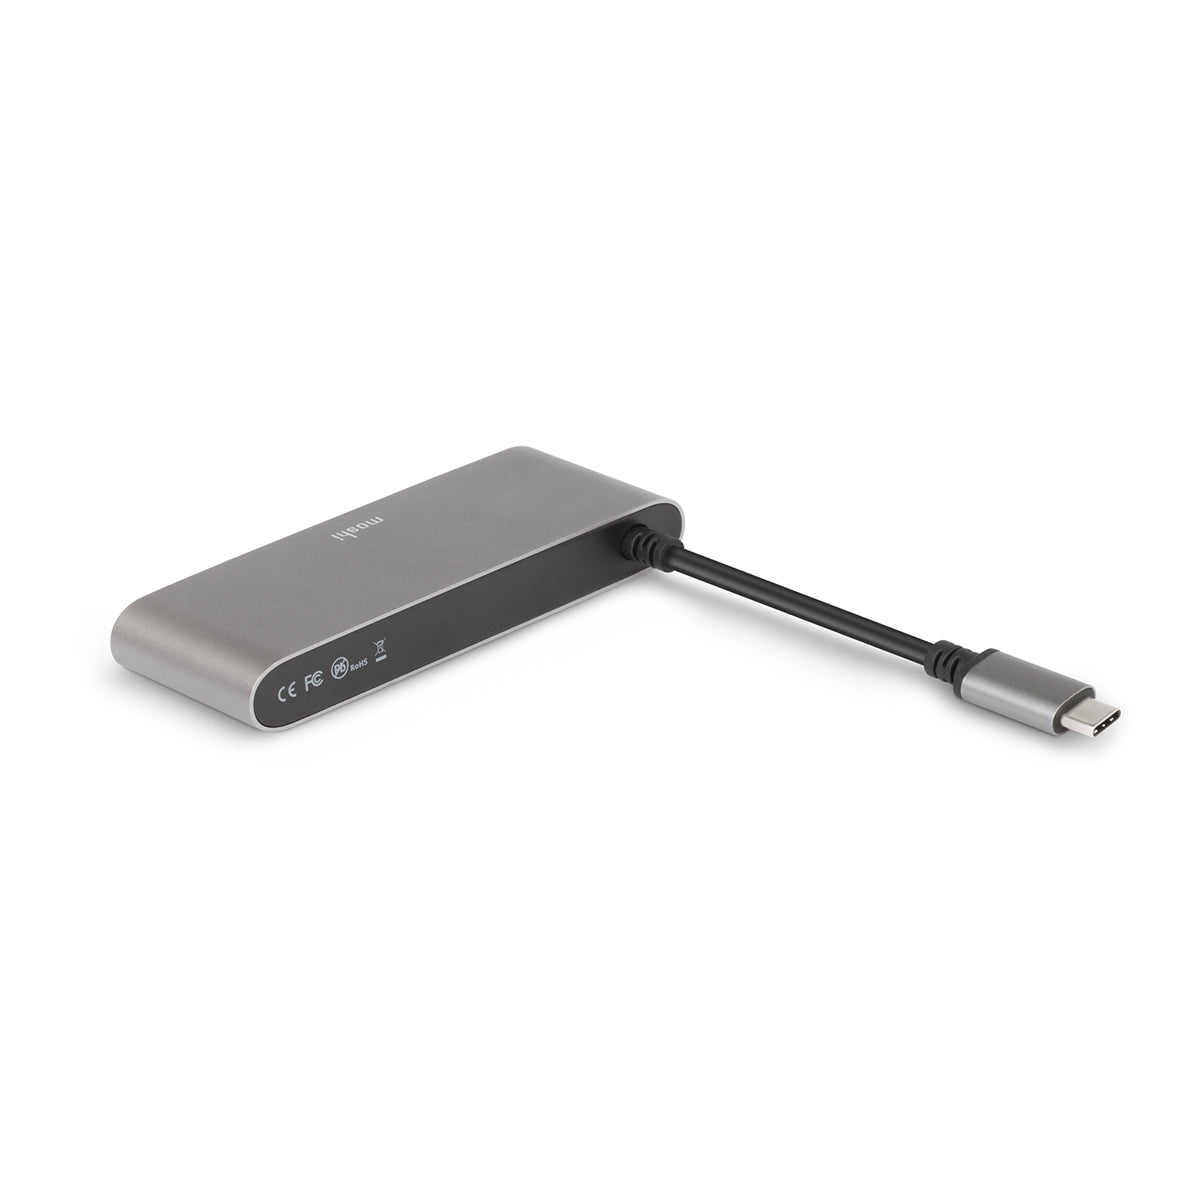 MOSHI USB C Multimedia Adapter - Titanium Gray